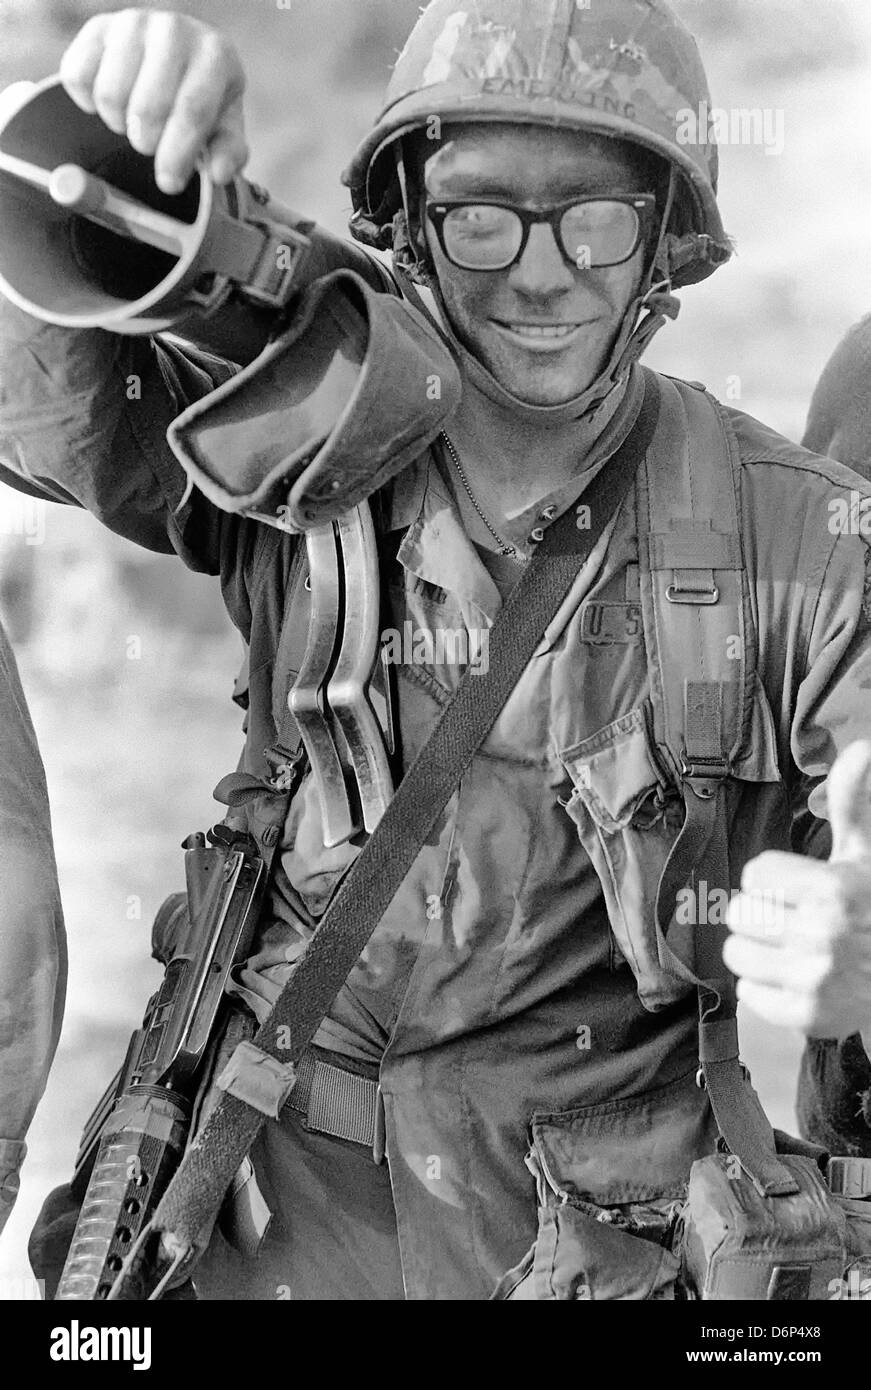 Un fantassin nous transporte un 90mm canon sans recul M67 lors de l'invasion de la Grenade, de code opération Urgent Fury 9 Novembre 1983 à St Georges, Grenade. L'invasion a commencé le 25 octobre 1983 et a été la première grande intervention militaire des États-Unis depuis la fin de la guerre du Vietnam. Banque D'Images